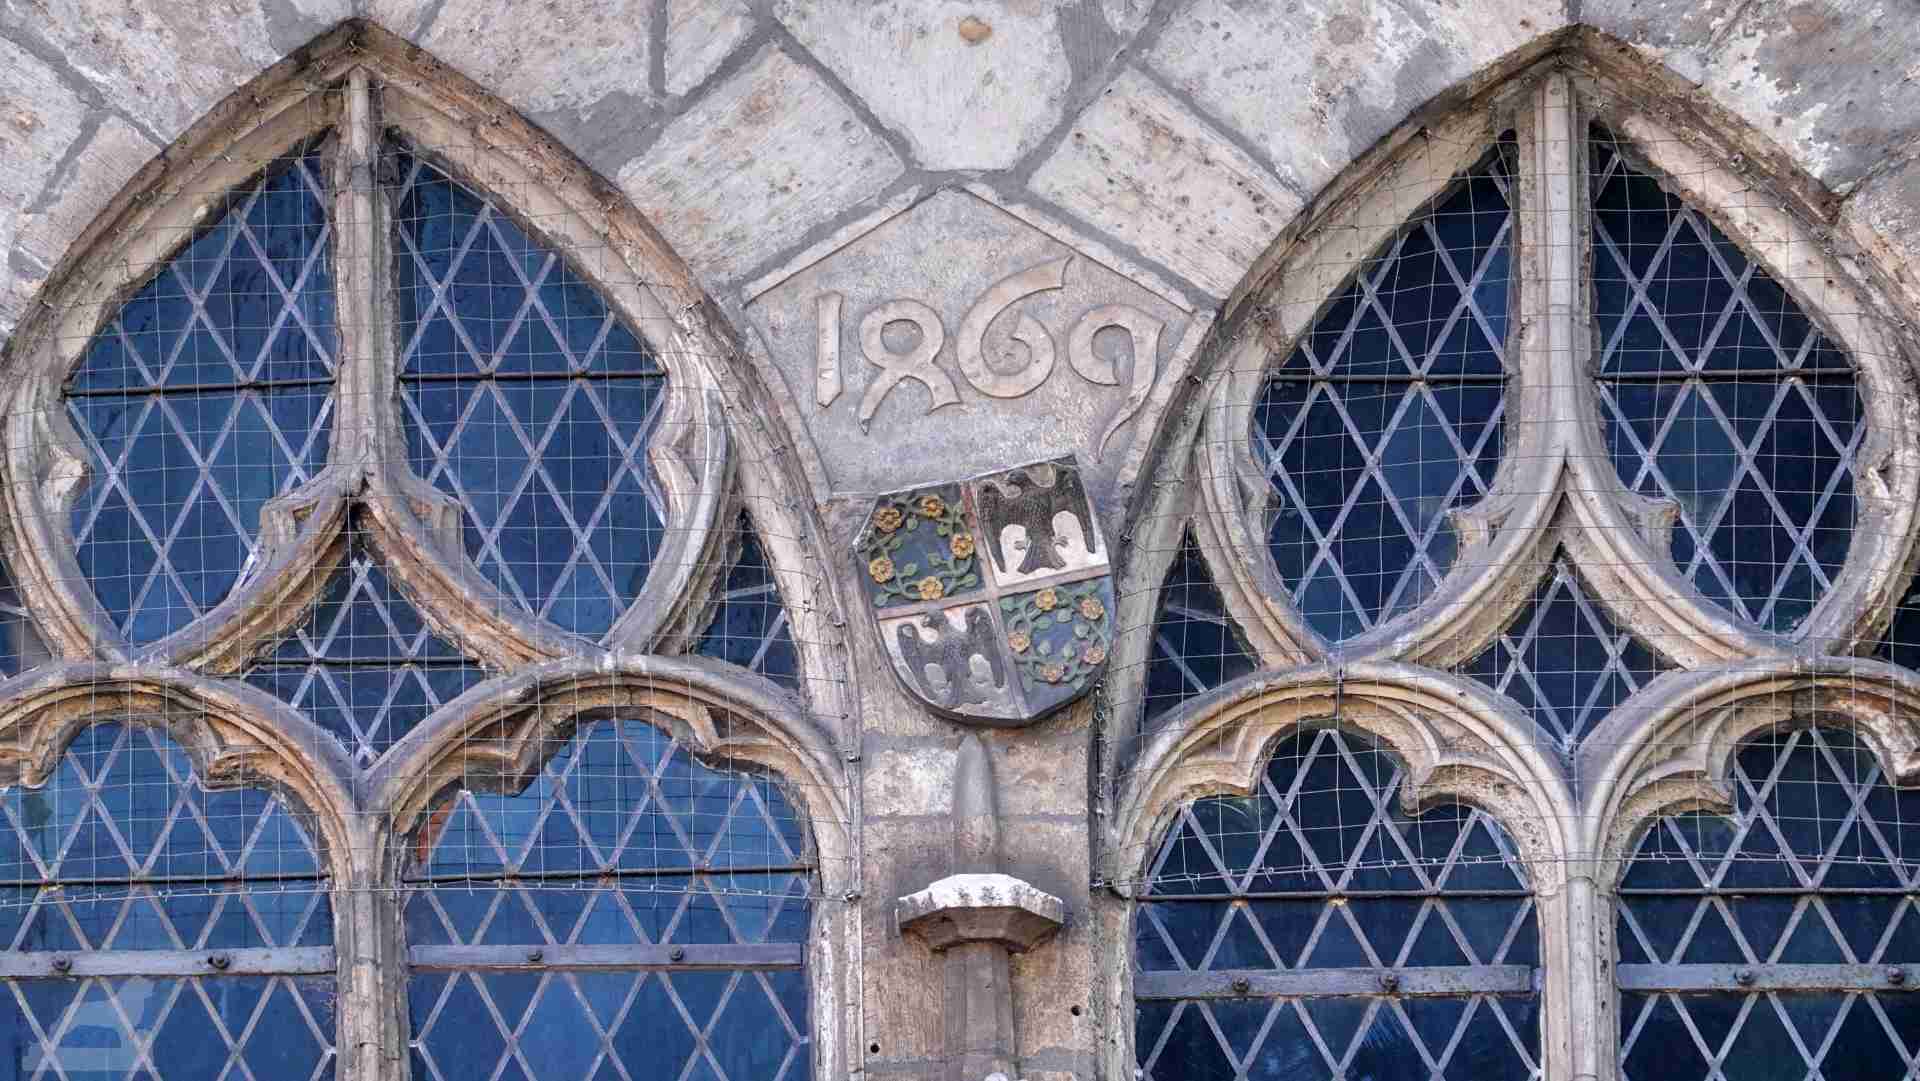 Inschrift in Domfassade 1469 (die halbe 8 entspricht einer 4)